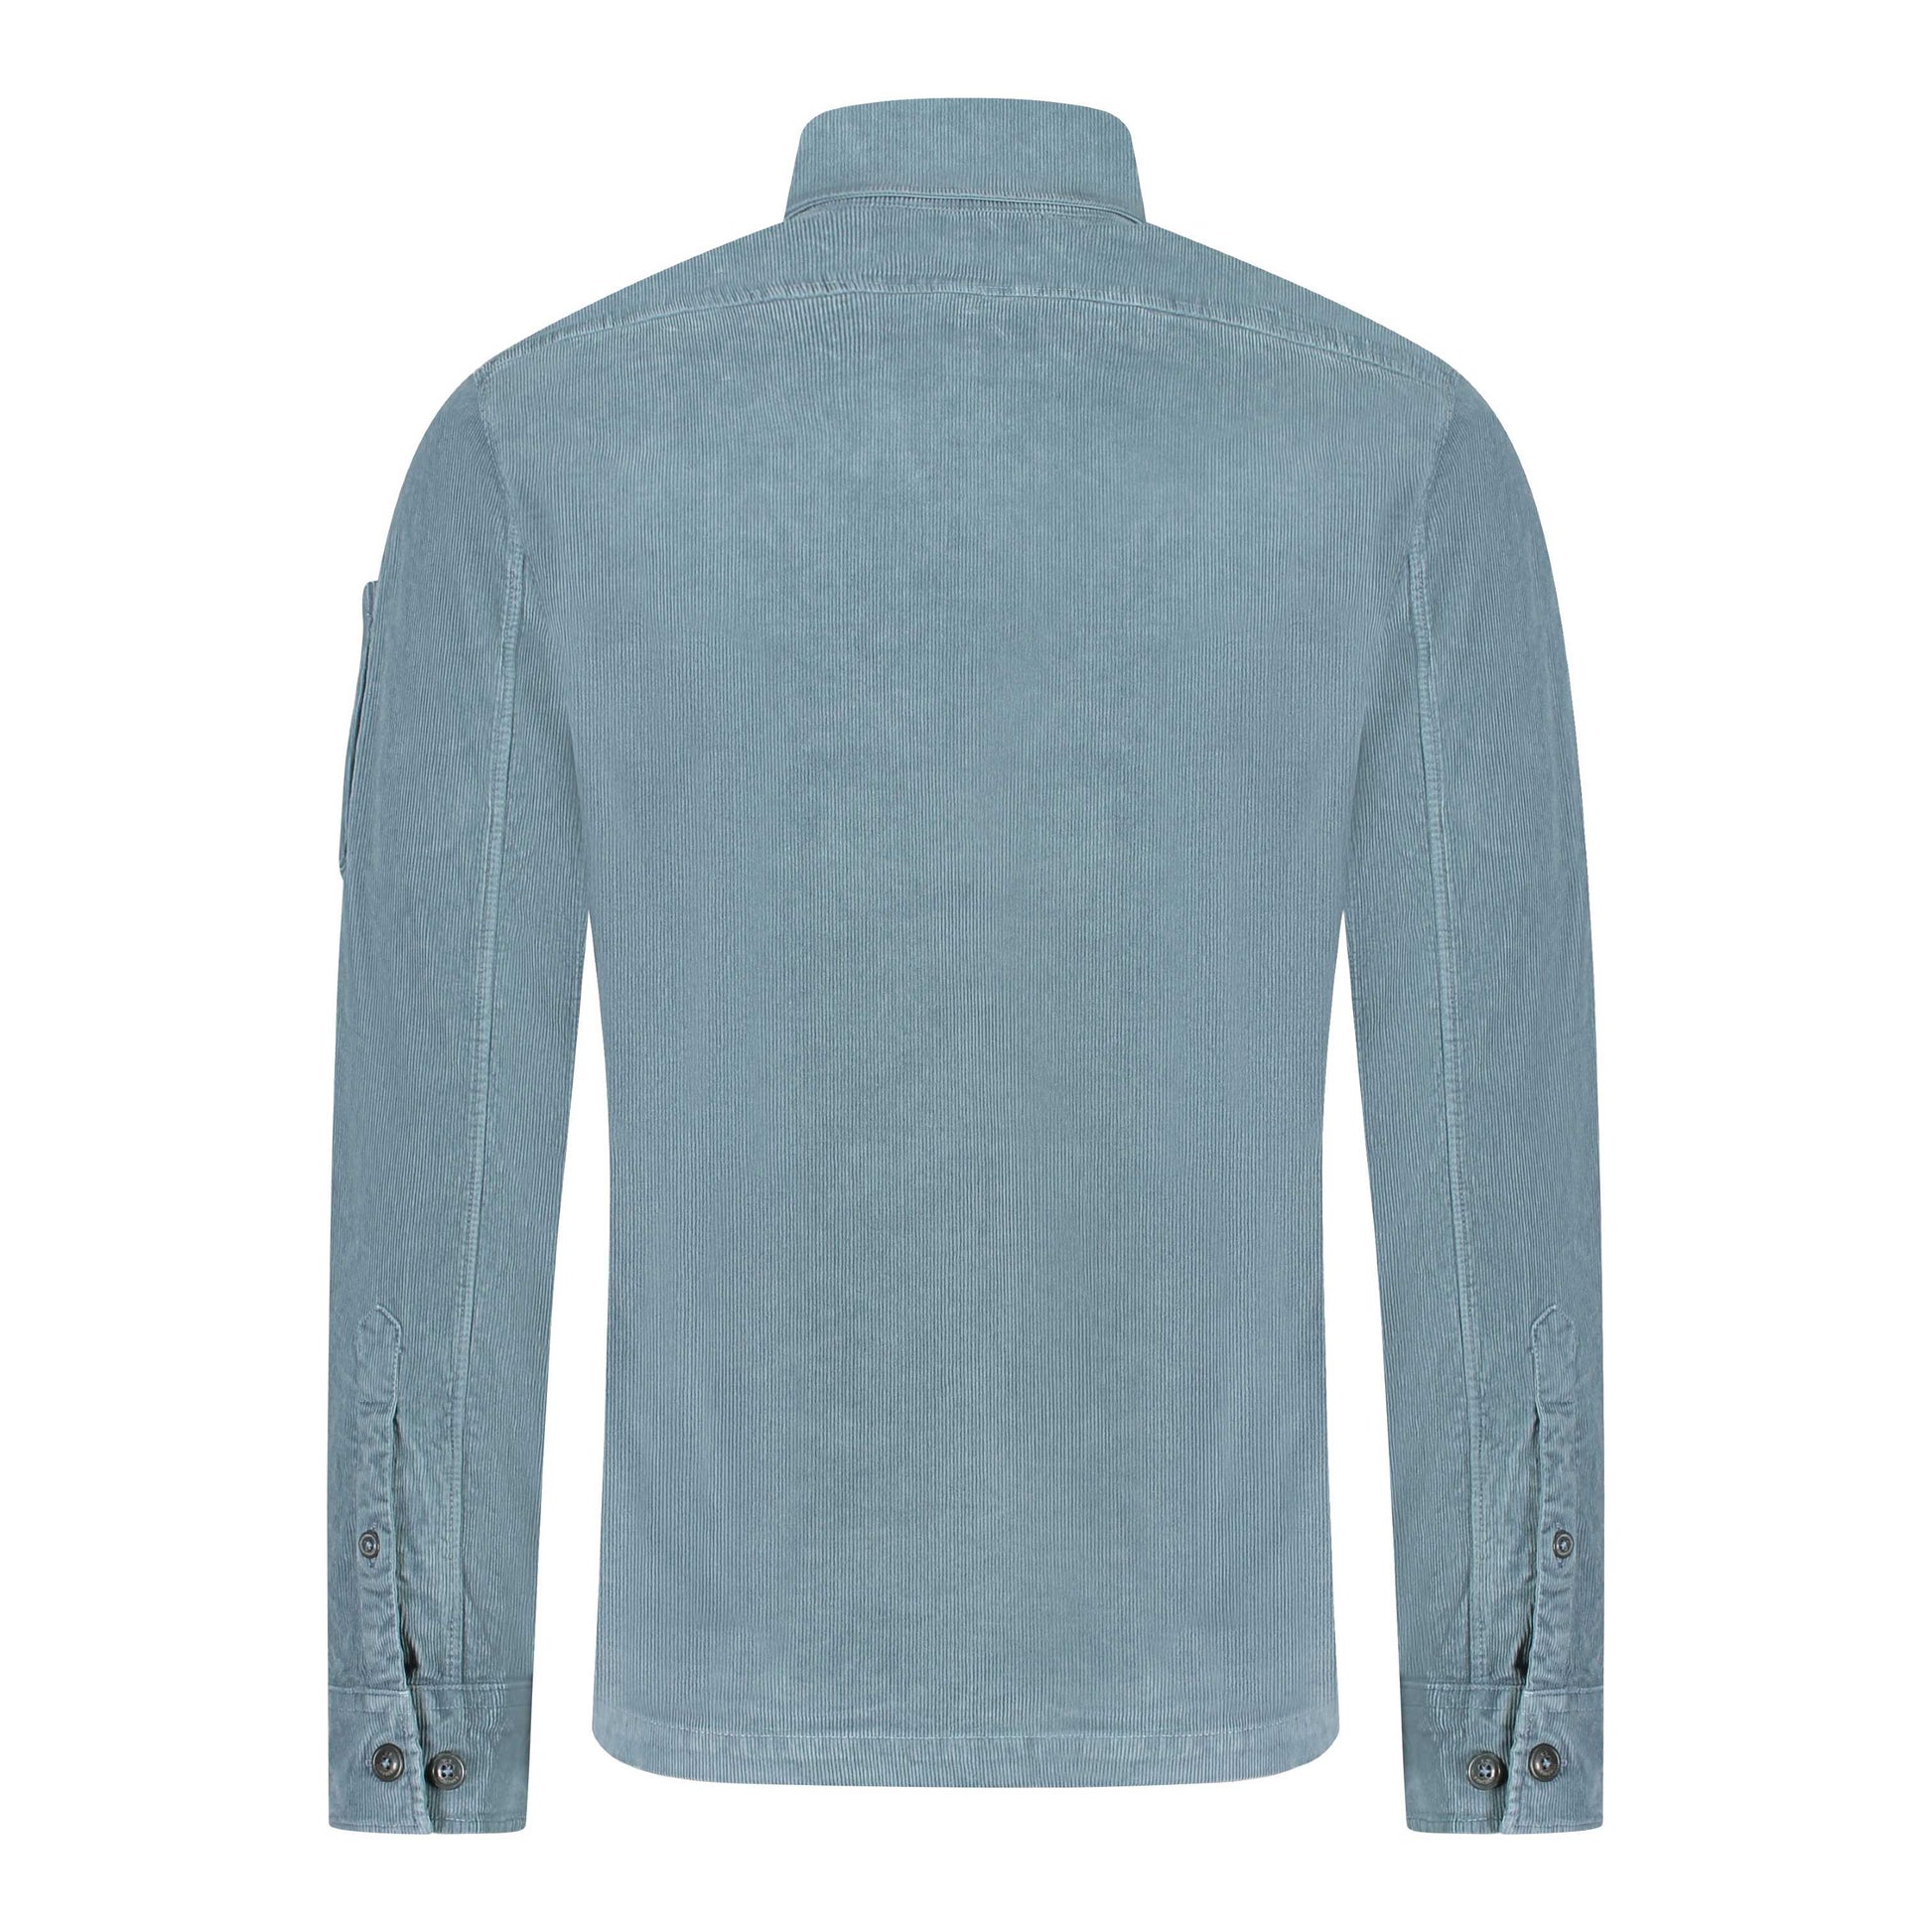 C.P. Company Cord Shirt - 871 Orion Blue - Escape Menswear